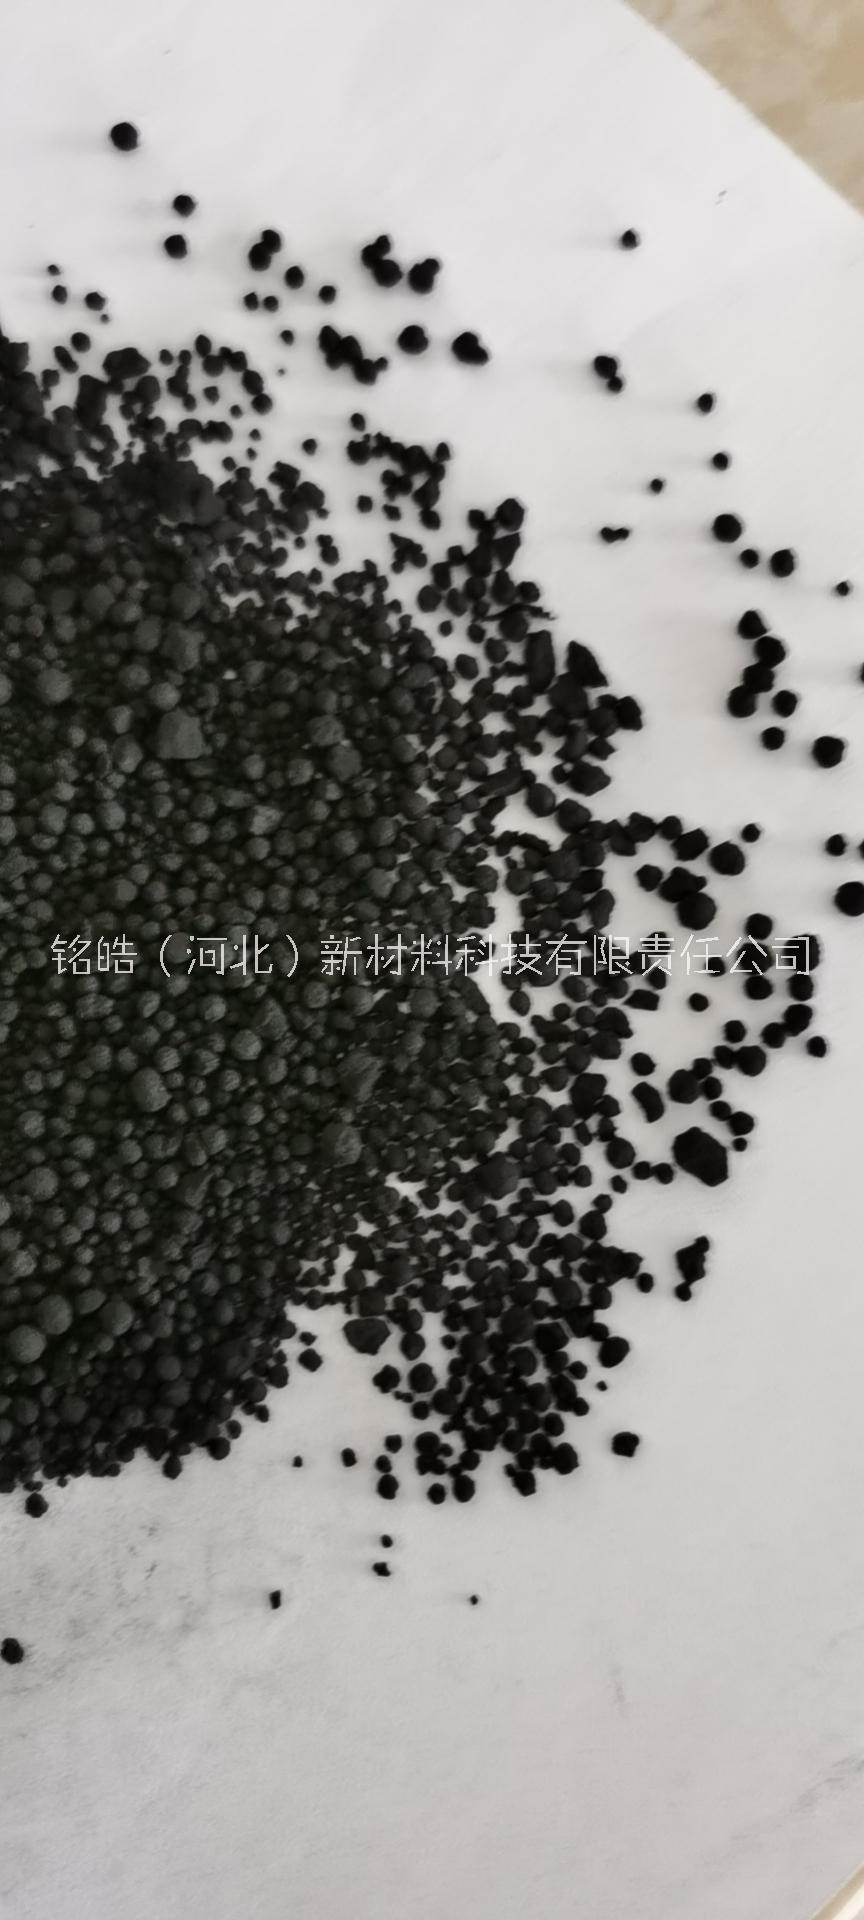 湿法颗粒碳黑N330价格2600元/吨,河北定州碳黑价格图片